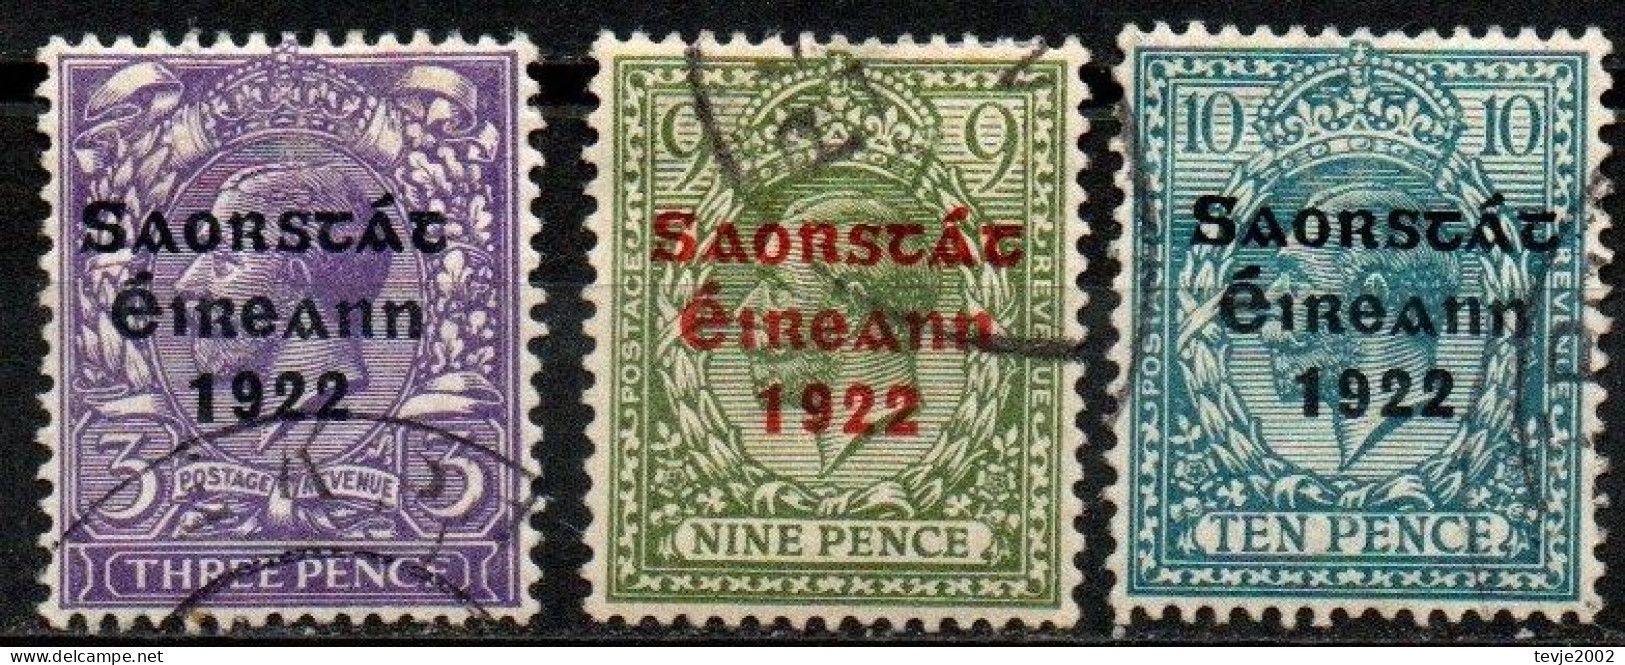 Irland Eire 1922 - Mi.Nr. 30 I + 34 I + 35 I - Gestempelt Used - Used Stamps